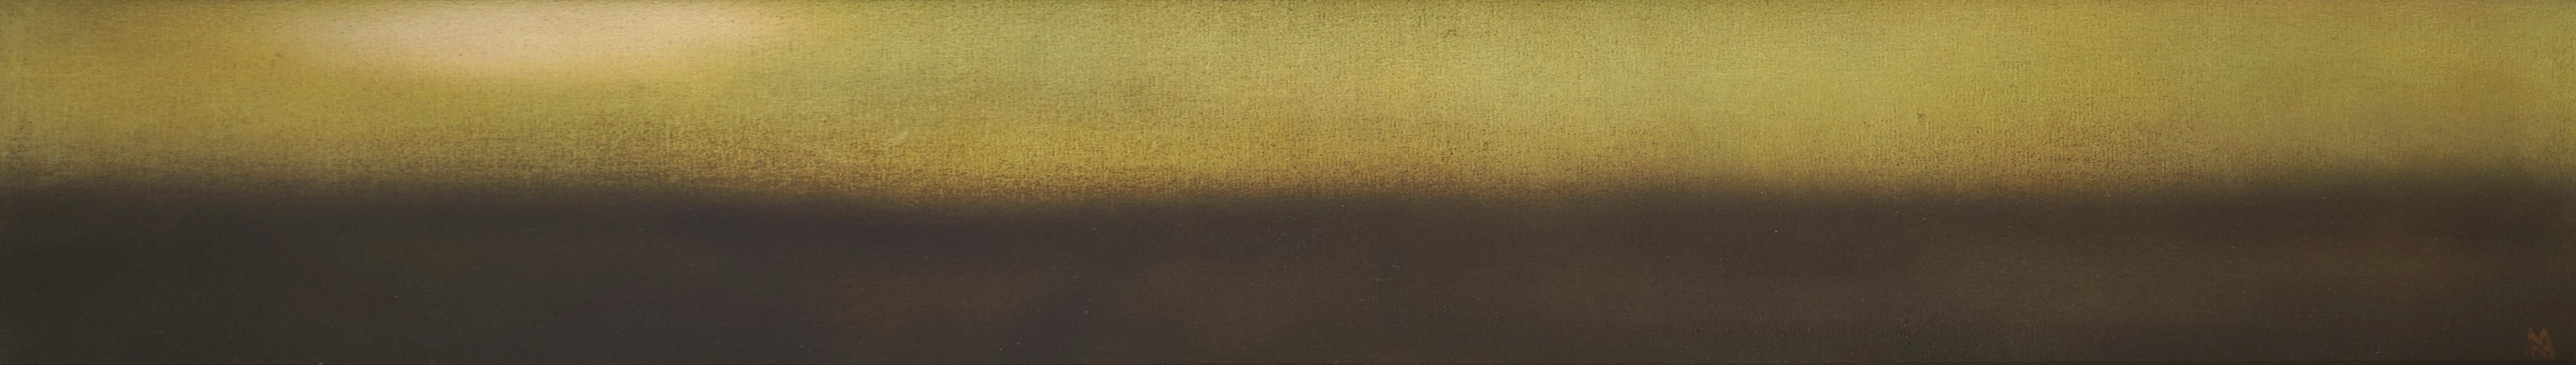 Nikolai Makarov Landscape Painting - Horizon